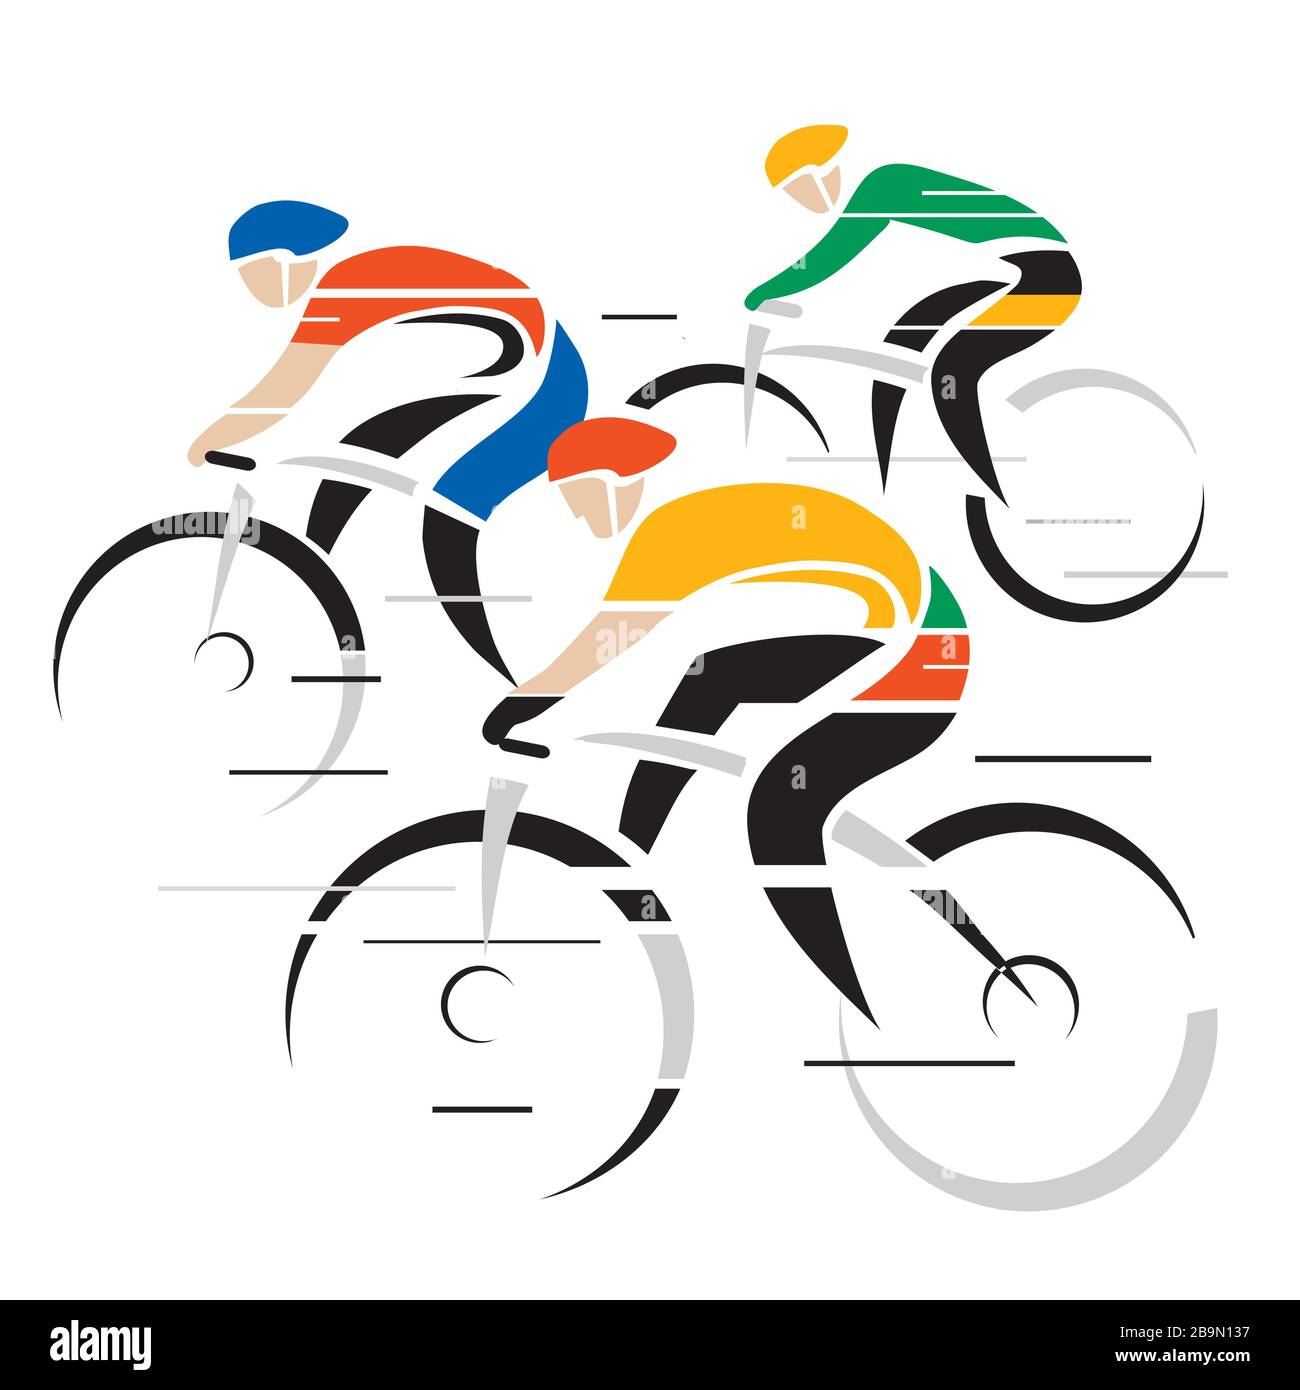 Drei Radfahrer, Wettbewerb. Stilisierte bunte Zeichnung von Radfahrern in voller Geschwindigkeit. Isoliert auf weißem Hintergrund. Vektor verfügbar. Stock Vektor